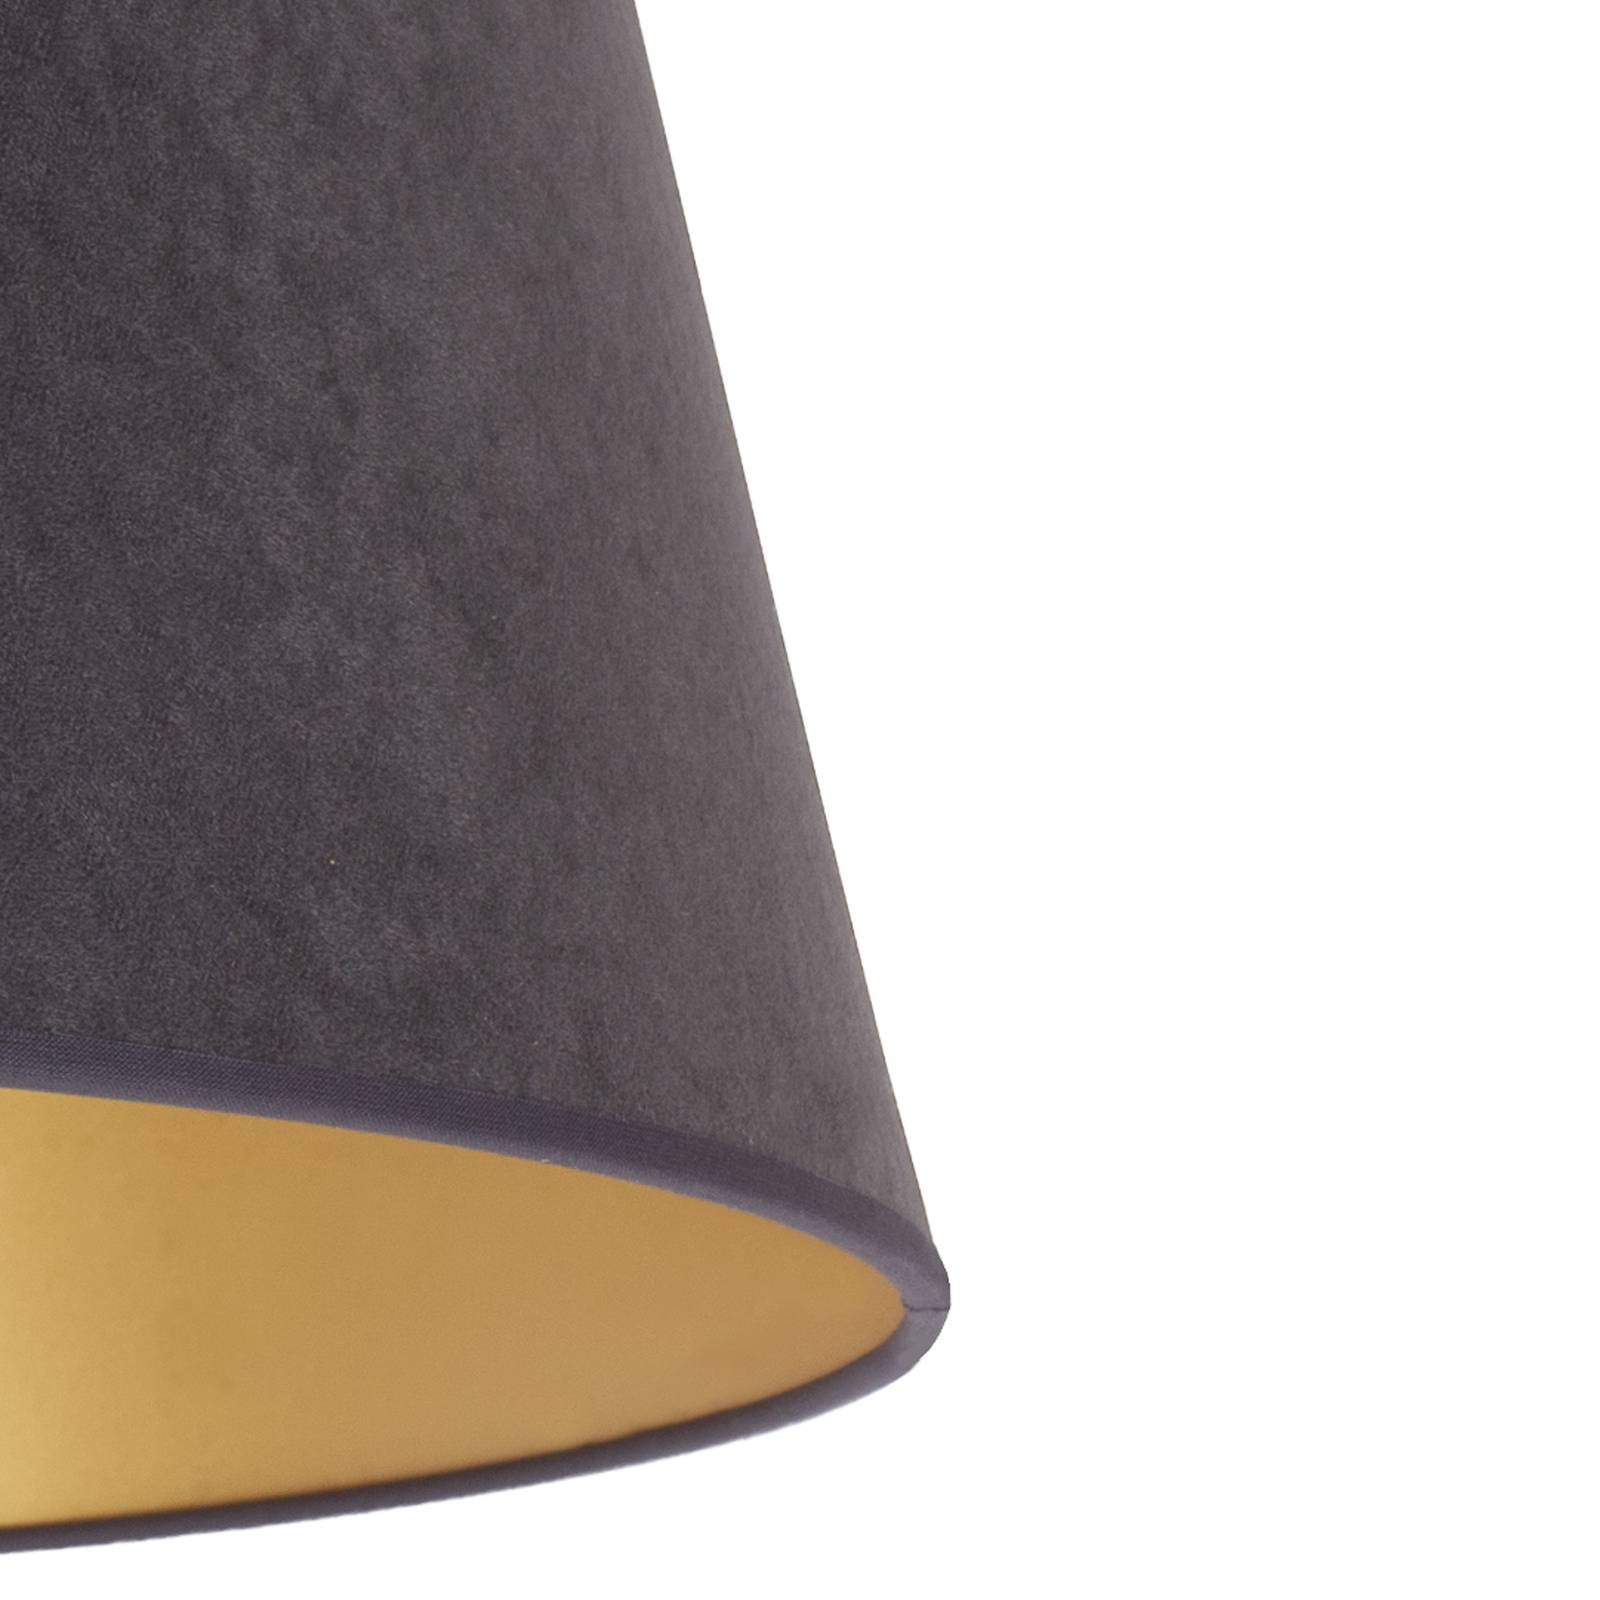 Cone lámpaernyő 25,5 cm magas, grafit/arany